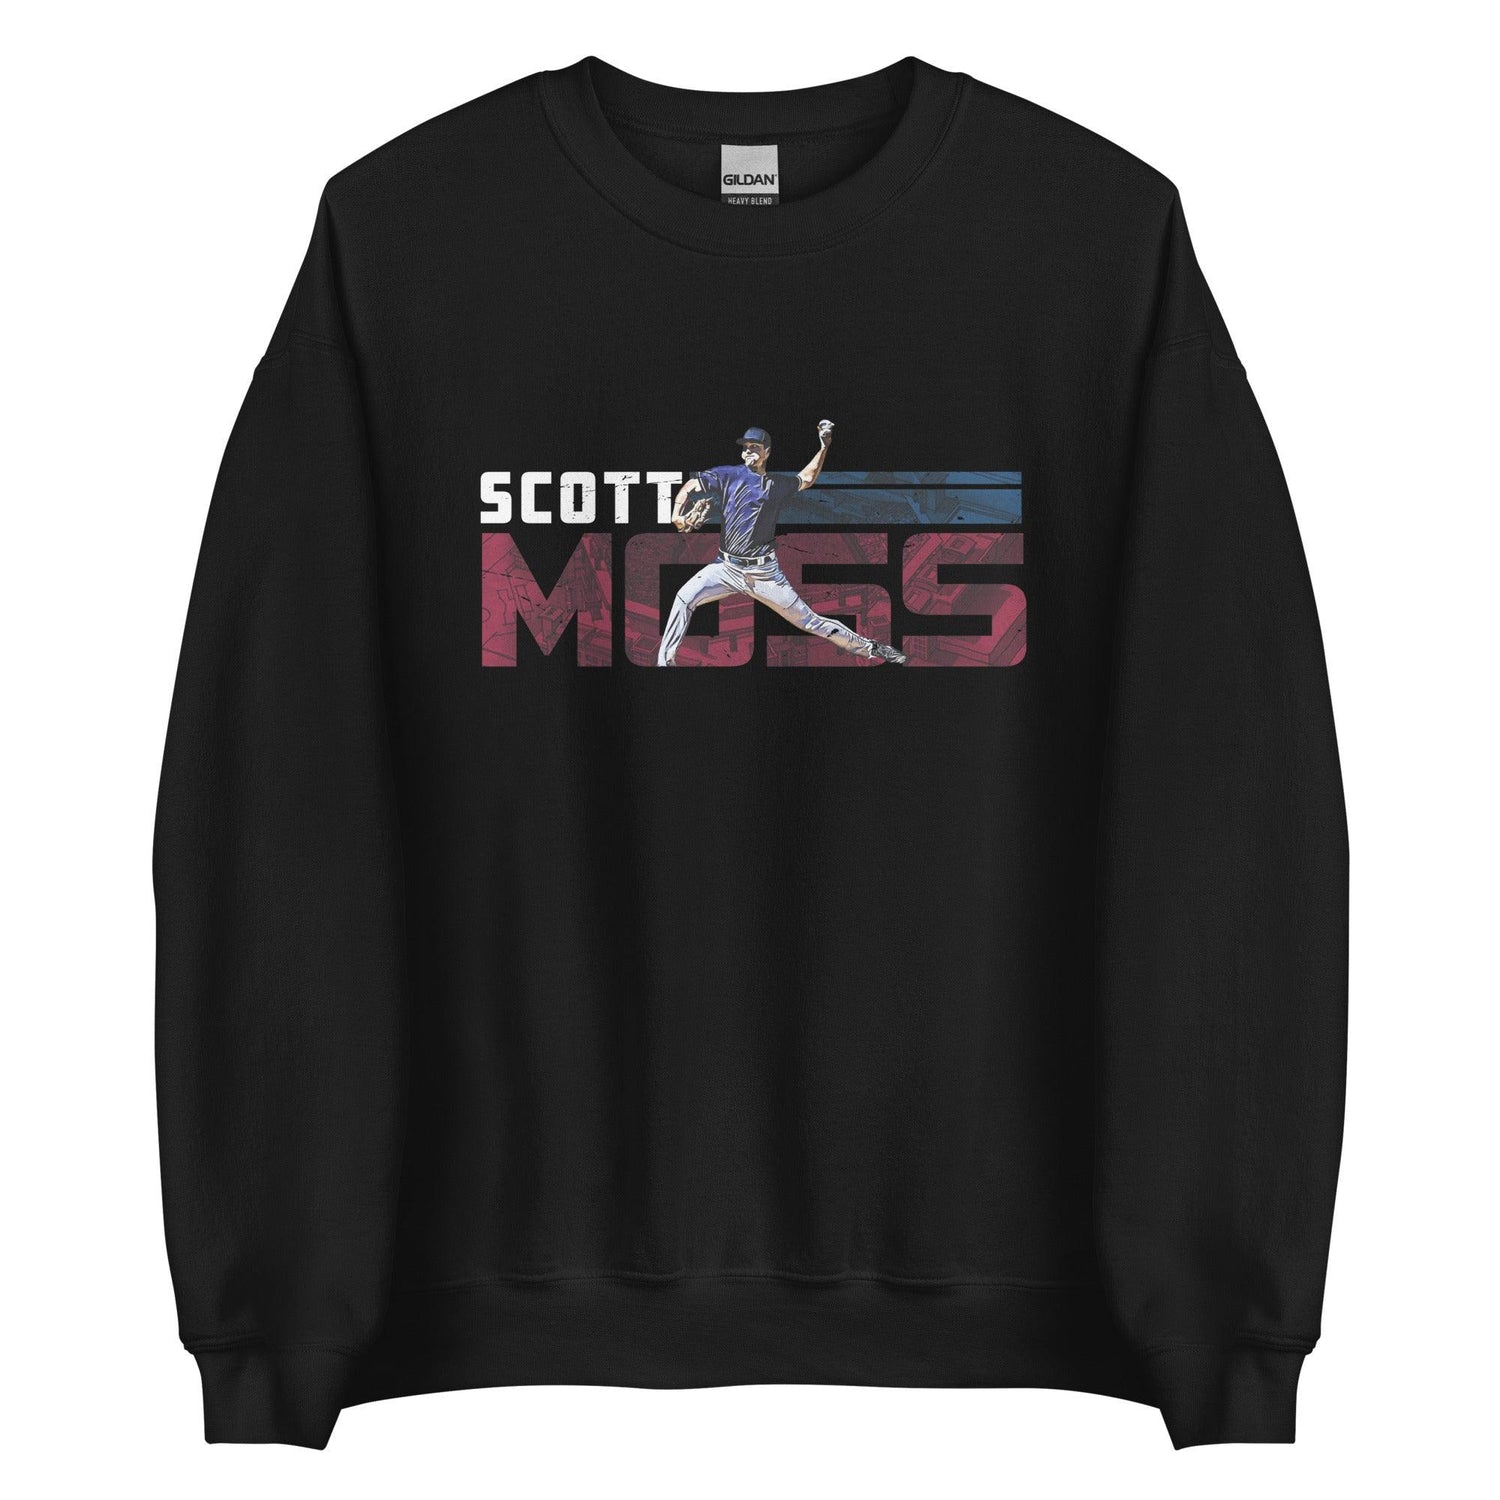 Scott Moss "Speed" Sweatshirt - Fan Arch